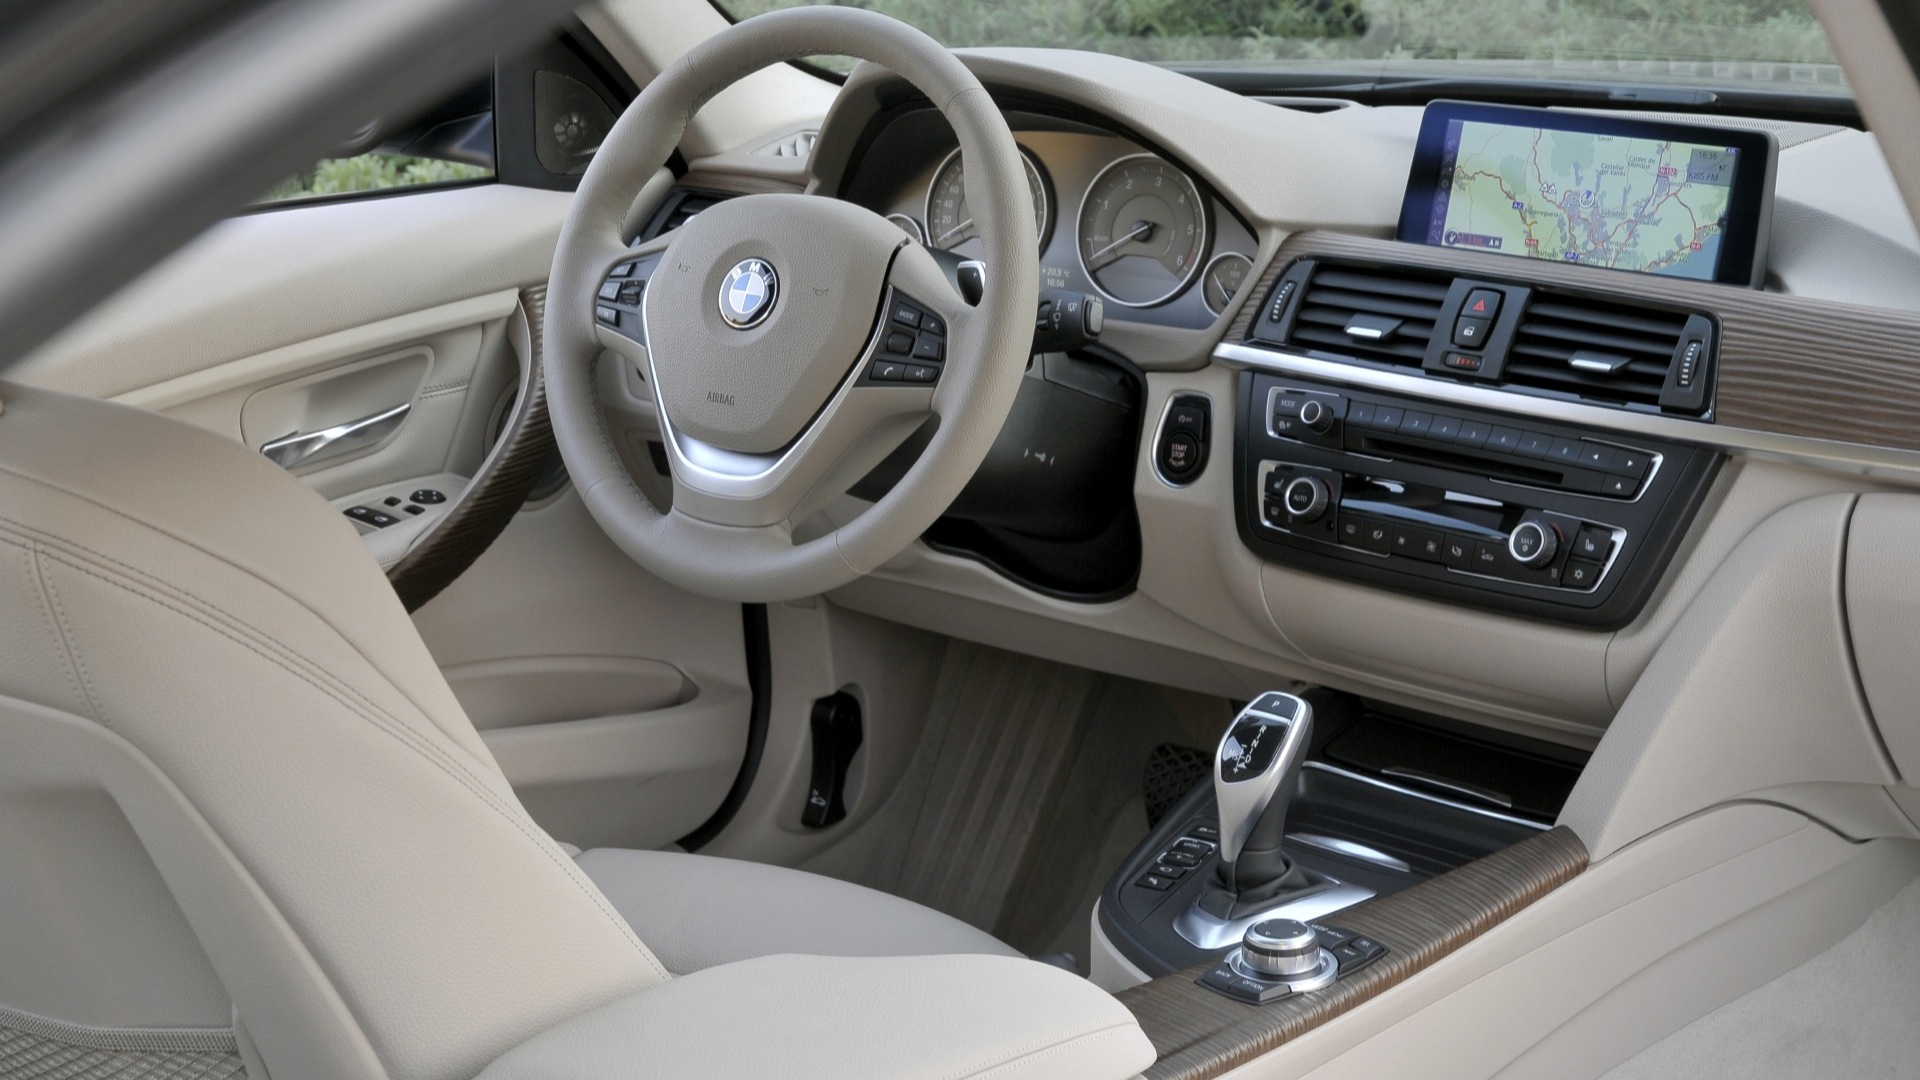 Butcher Better Socialism BMW 3 Series 320d Interior Car Photos - Overdrive